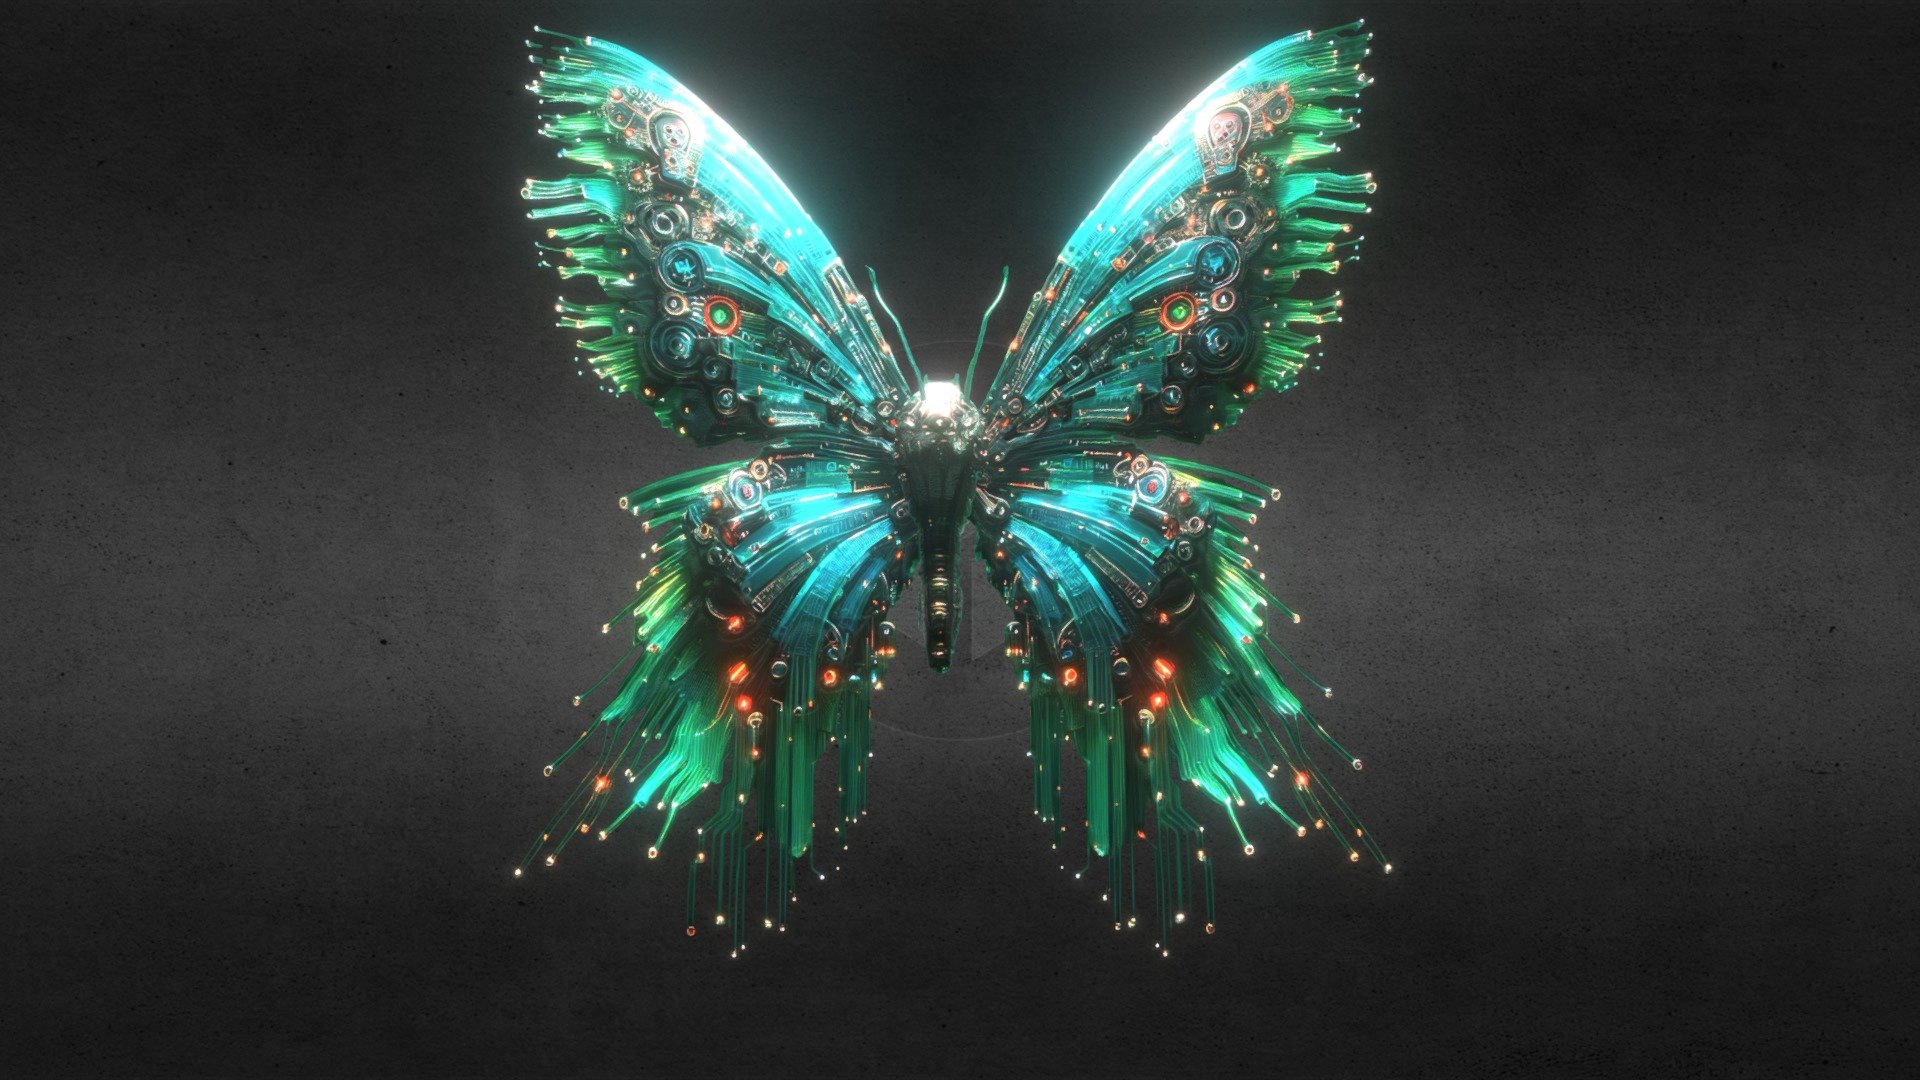 Cyber butterfly 2.5D - Buy Royalty Free 3D model by endike [771950c ...